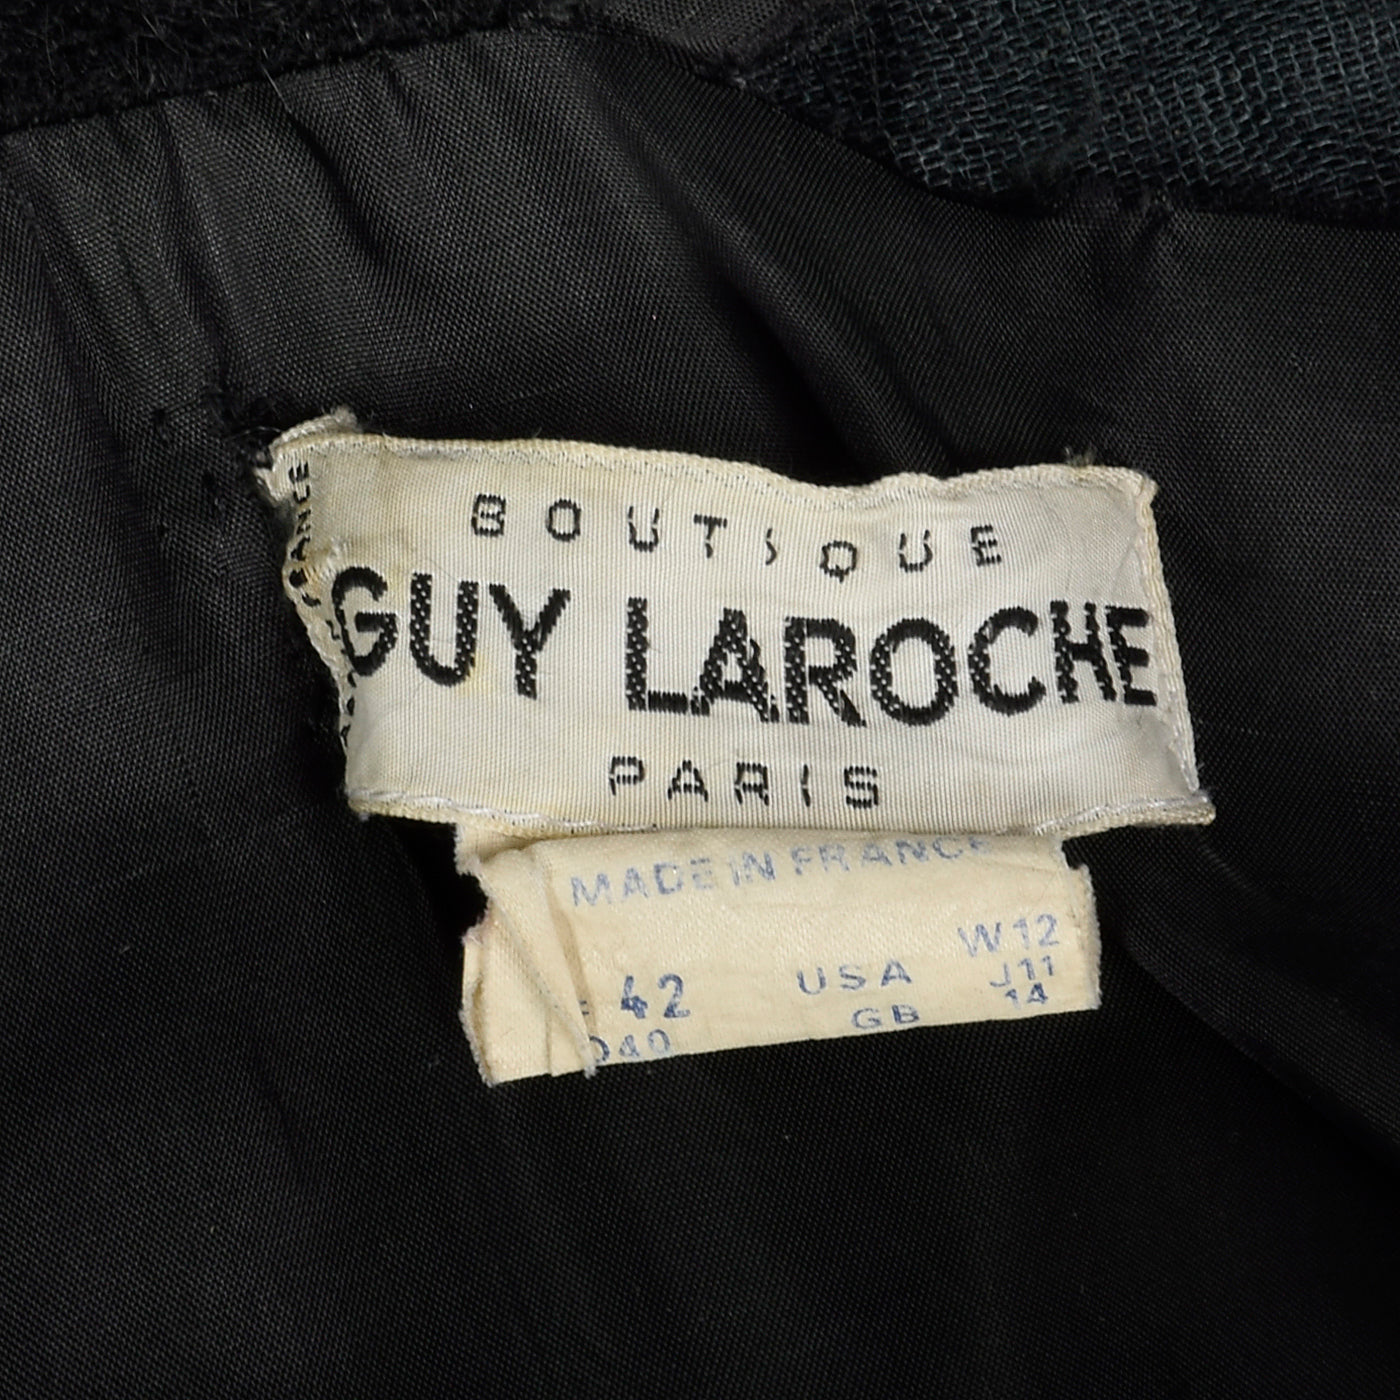 XL Guy Laroche Boutique 1980s Mohair Coat